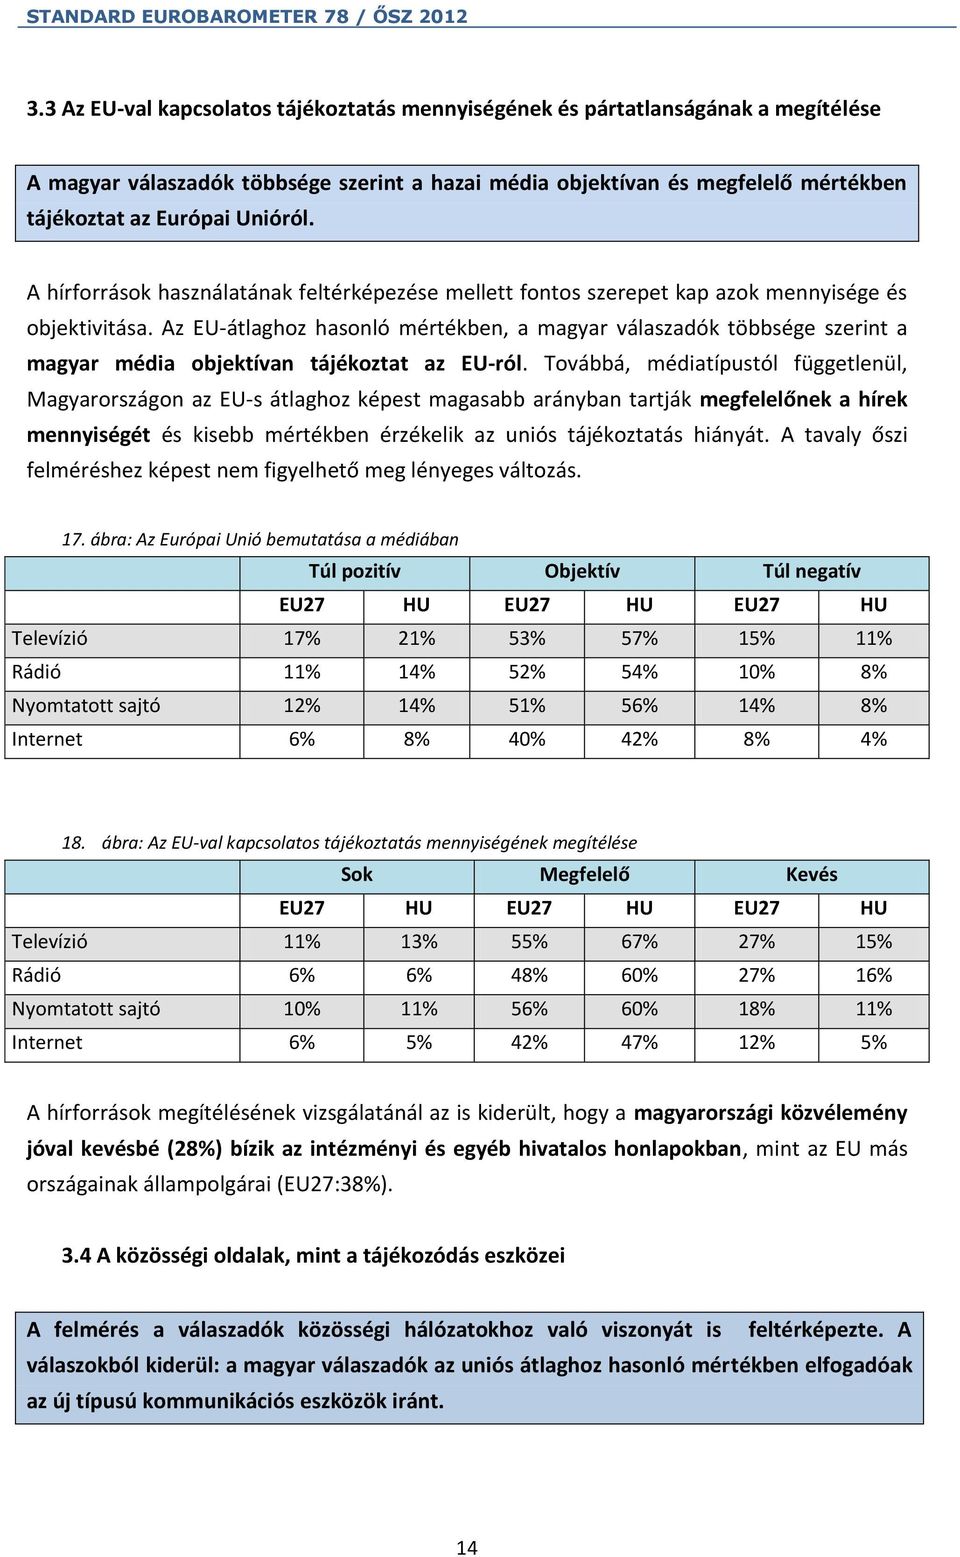 Az EU-átlaghoz hasonló mértékben, a magyar válaszadók többsége szerint a magyar média objektívan tájékoztat az EU-ról.